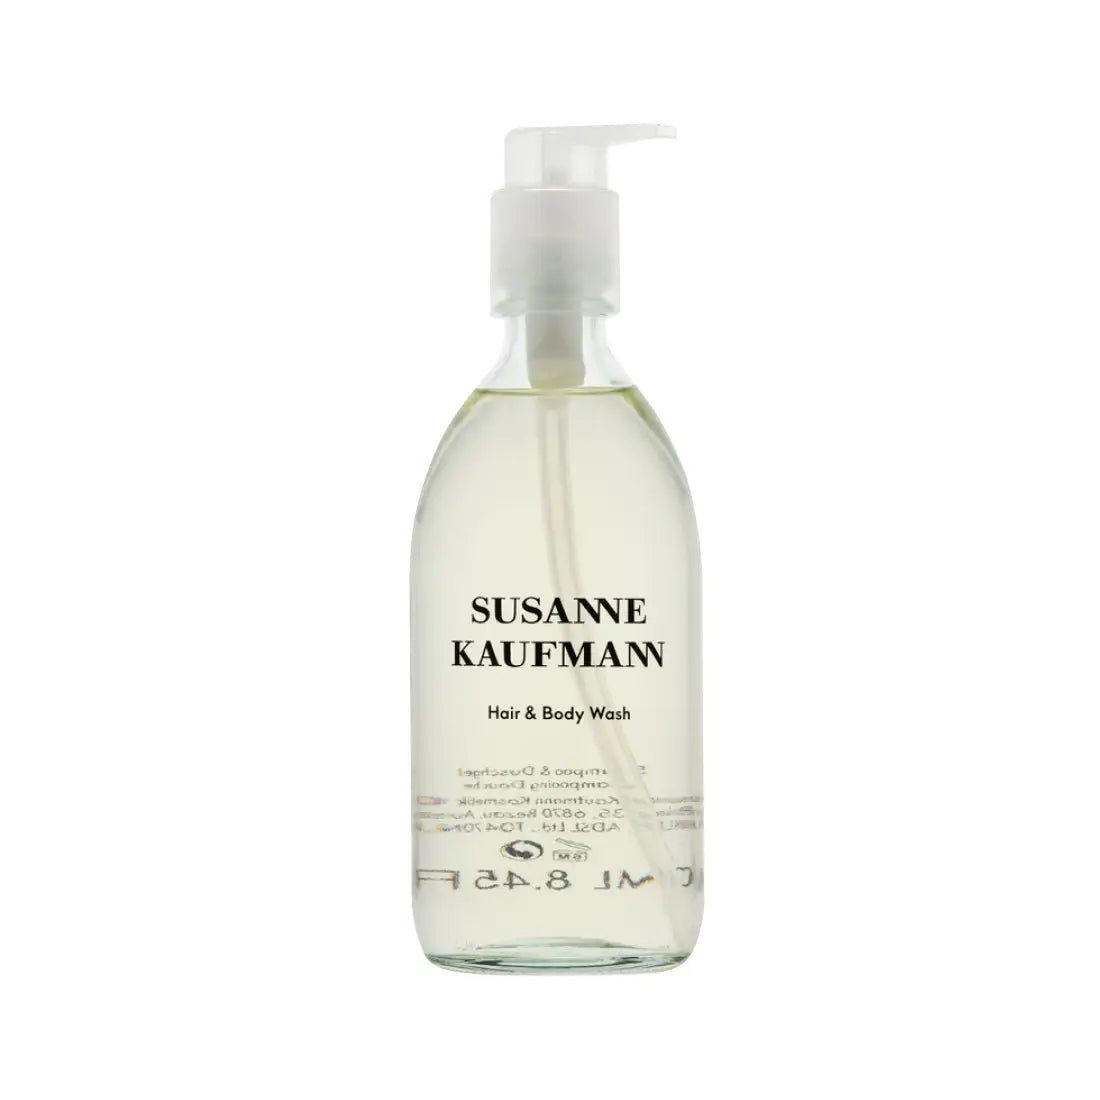 Susanne Kaufmann Hair & Body Wash 250ml - Free Shipping 